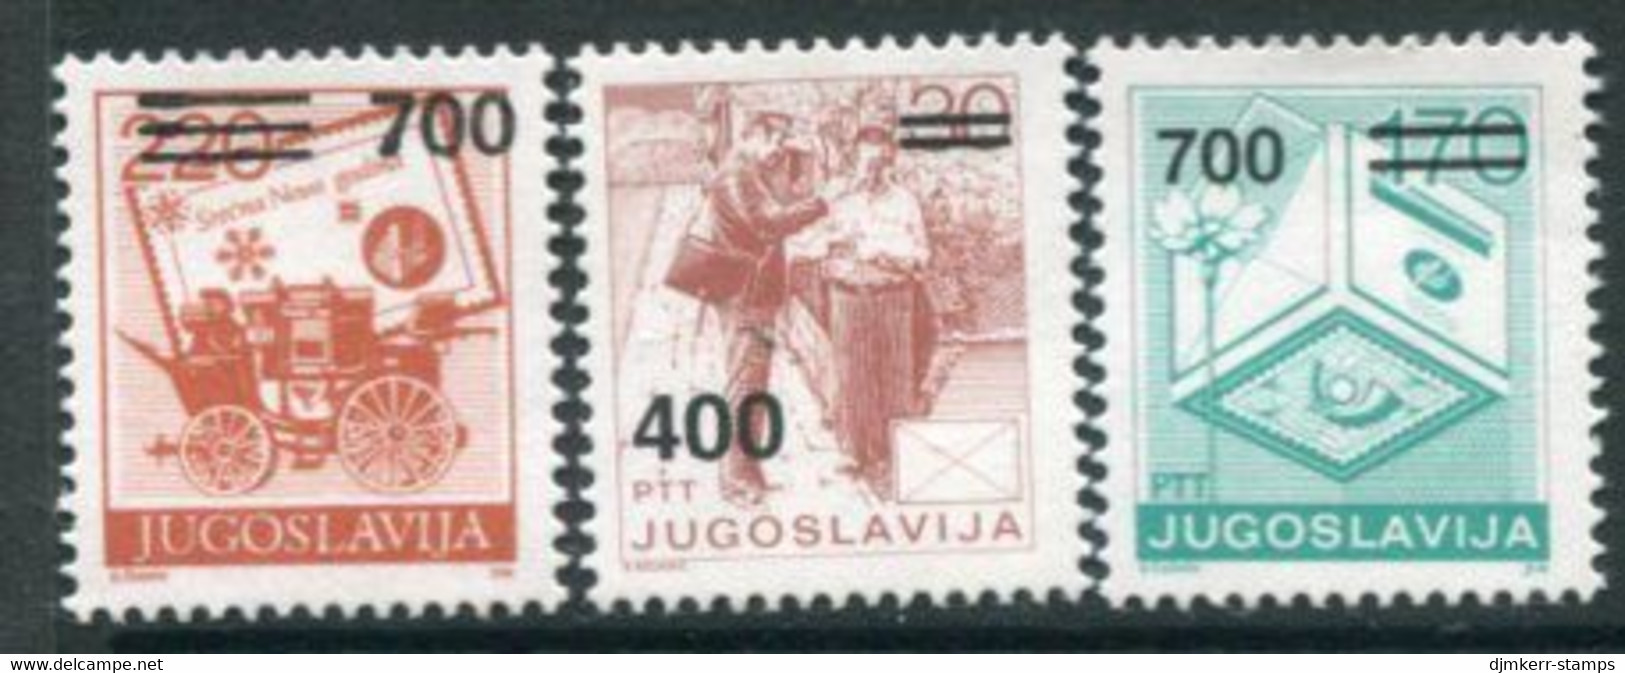 YUGOSLAVIA 1989 Surcharges 400 D, 700 D. (2) MNH / **.  Michel 2359, 2363-64 - Neufs